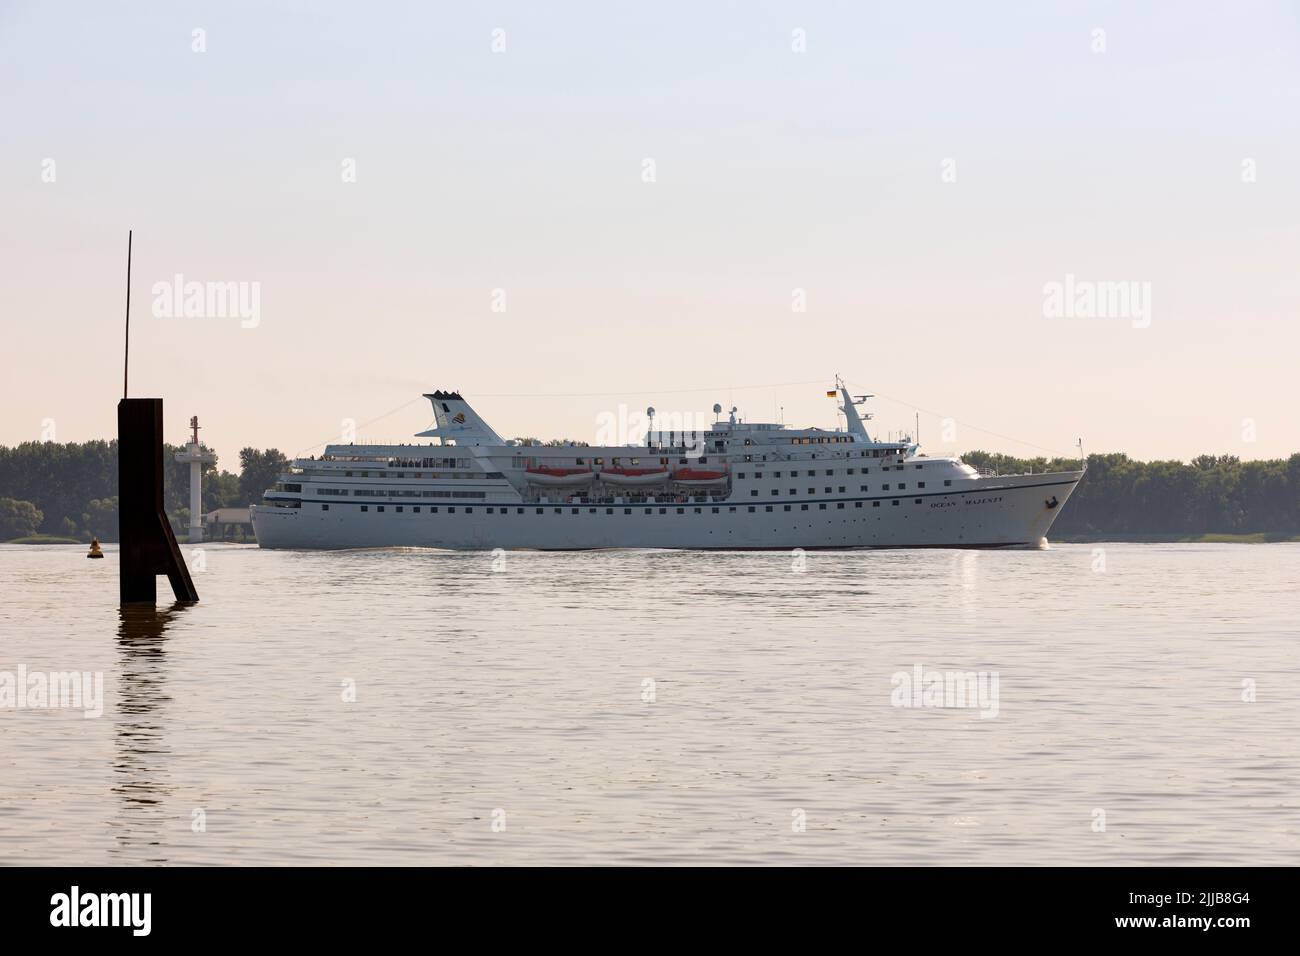 Stade, Alemania – 19 de julio de 2022: Crucero OCEAN MAJESTY, navegando bajo bandera portuguesa, en el río Elba con rumbo a Hamburgo. Foto de stock